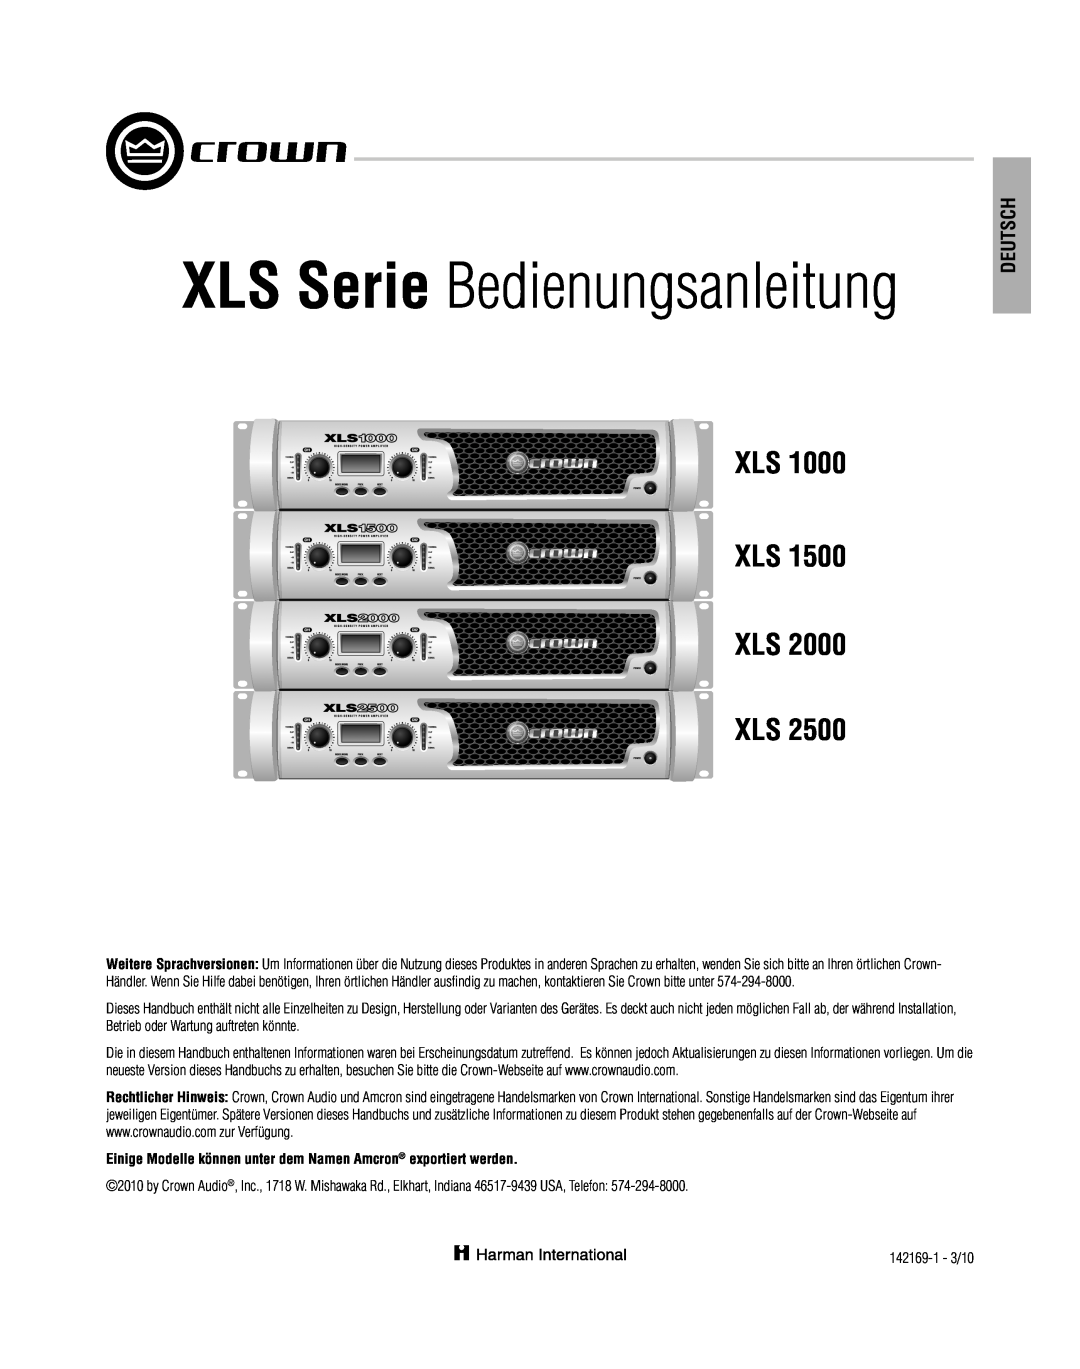 Crown XLS 1000 operation manual XLS Serie Bedienungsanleitung, Deutsch, Xls Xls Xls Xls 